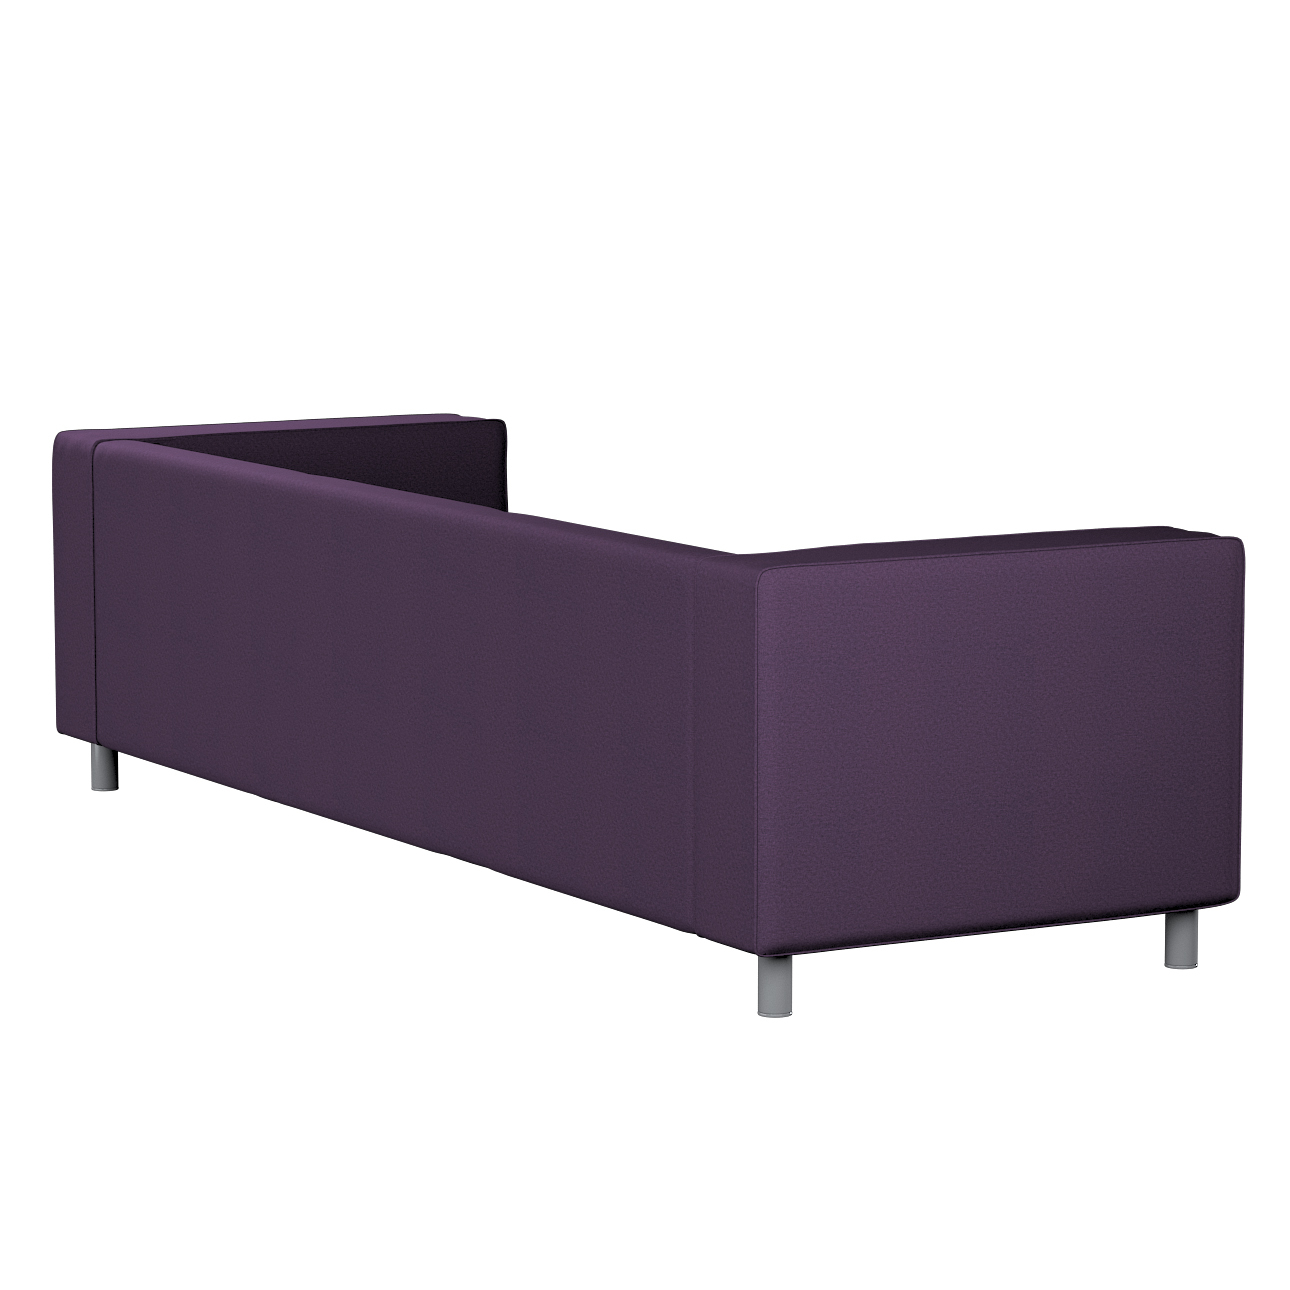 Bezug für Klippan 4-Sitzer Sofa, violett, Bezug für Klippan 4-Sitzer, Etna günstig online kaufen